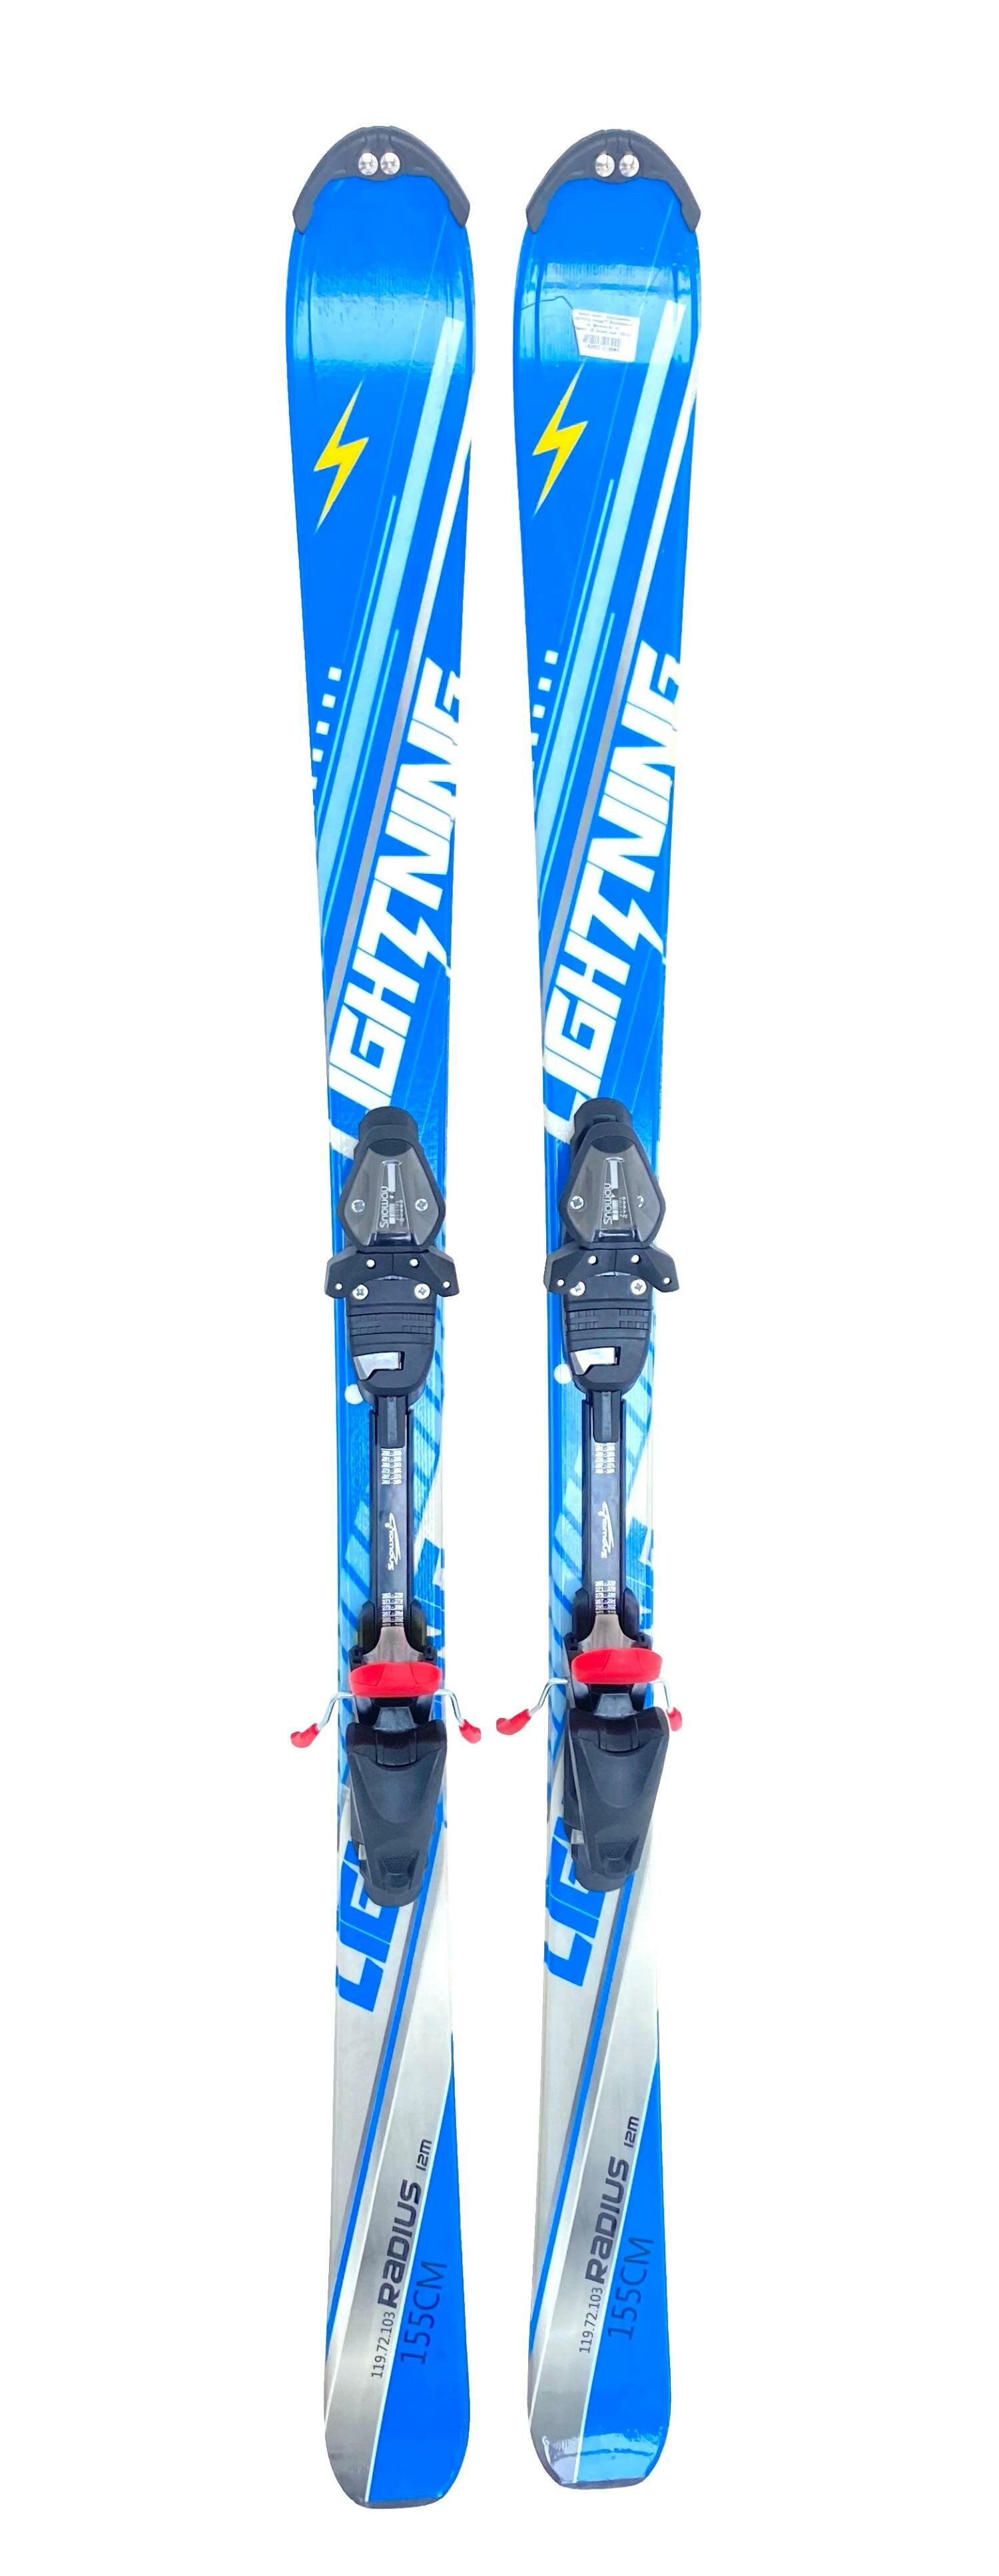 Горные лыжи с креплениями Lightning Xwing 72 Blue/White + кр. Snoway SX 10 (Радиус: 12; Длина лыж: 155 см)